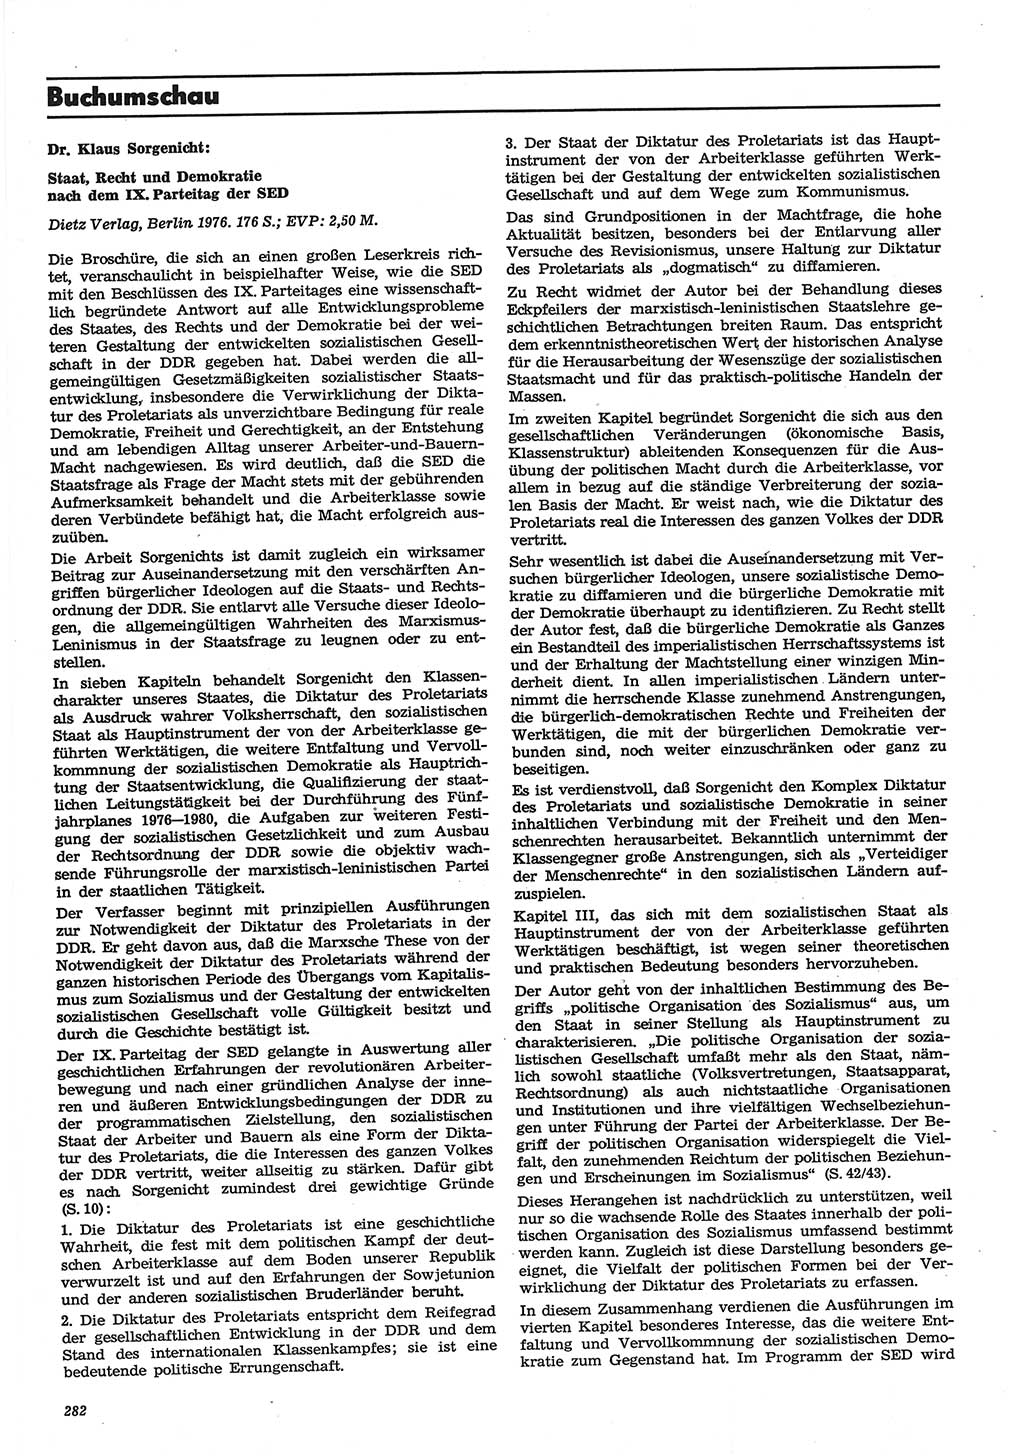 Neue Justiz (NJ), Zeitschrift für Recht und Rechtswissenschaft-Zeitschrift, sozialistisches Recht und Gesetzlichkeit, 31. Jahrgang 1977, Seite 282 (NJ DDR 1977, S. 282)